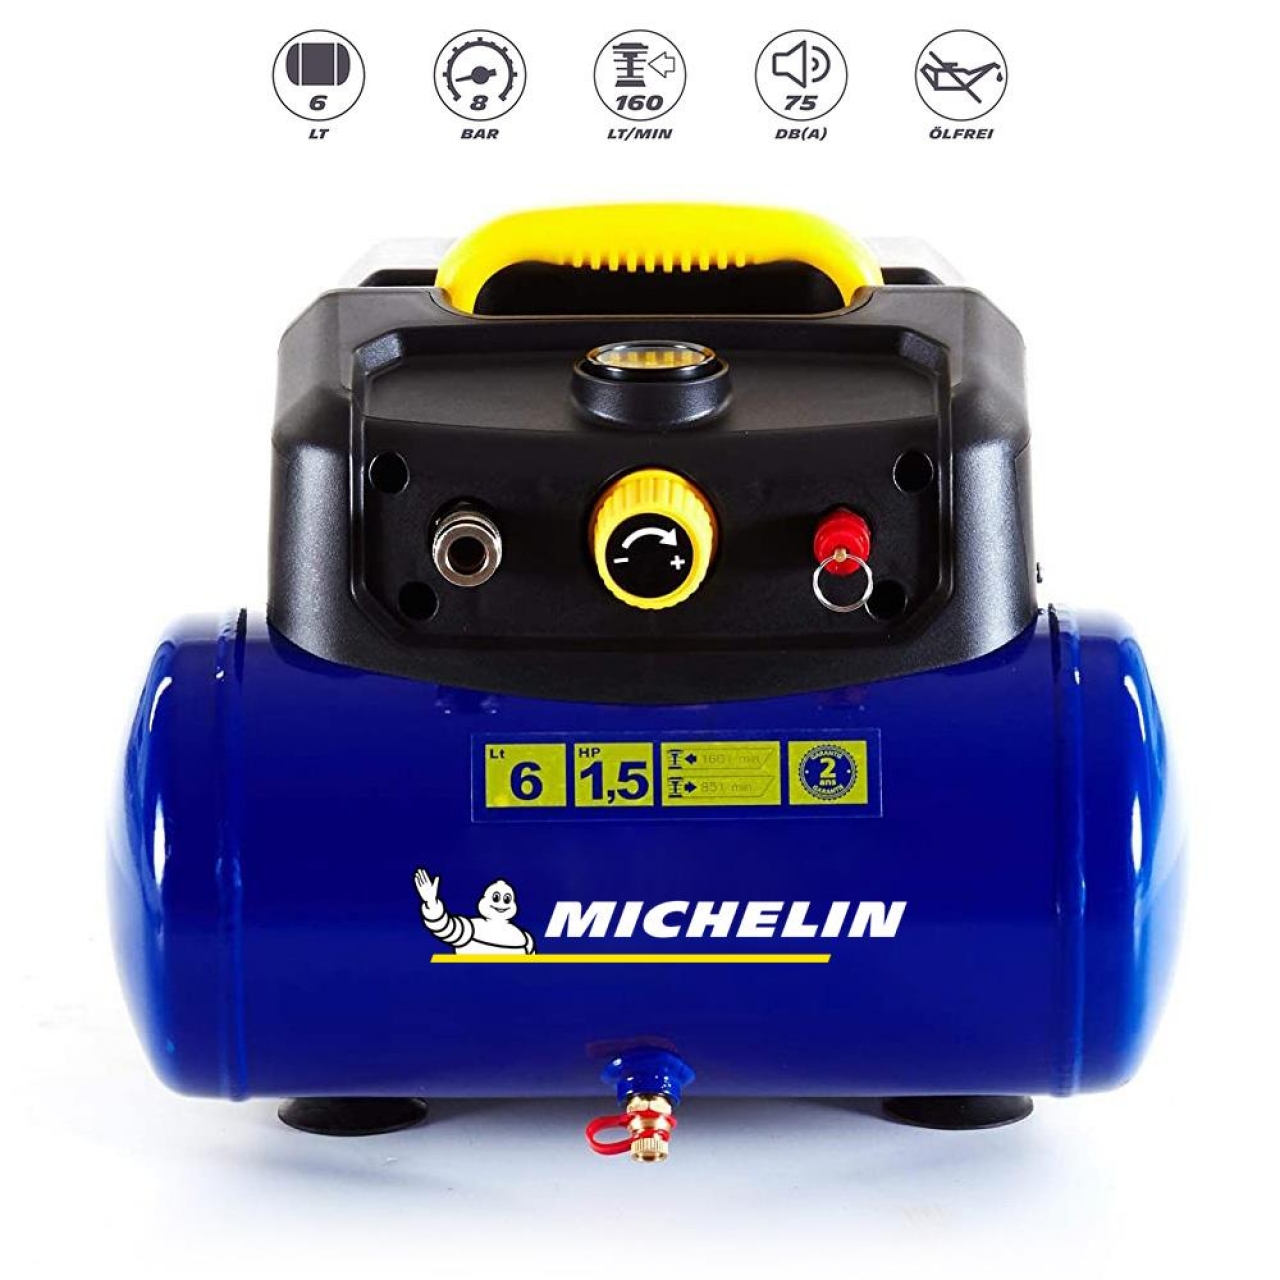 Michelin MBL6V2 1.5HP 6Lt 8Bar Yağsız Hava Kompresörü + 5M Hava Hortumu + Lastik Şişirme Tabancası